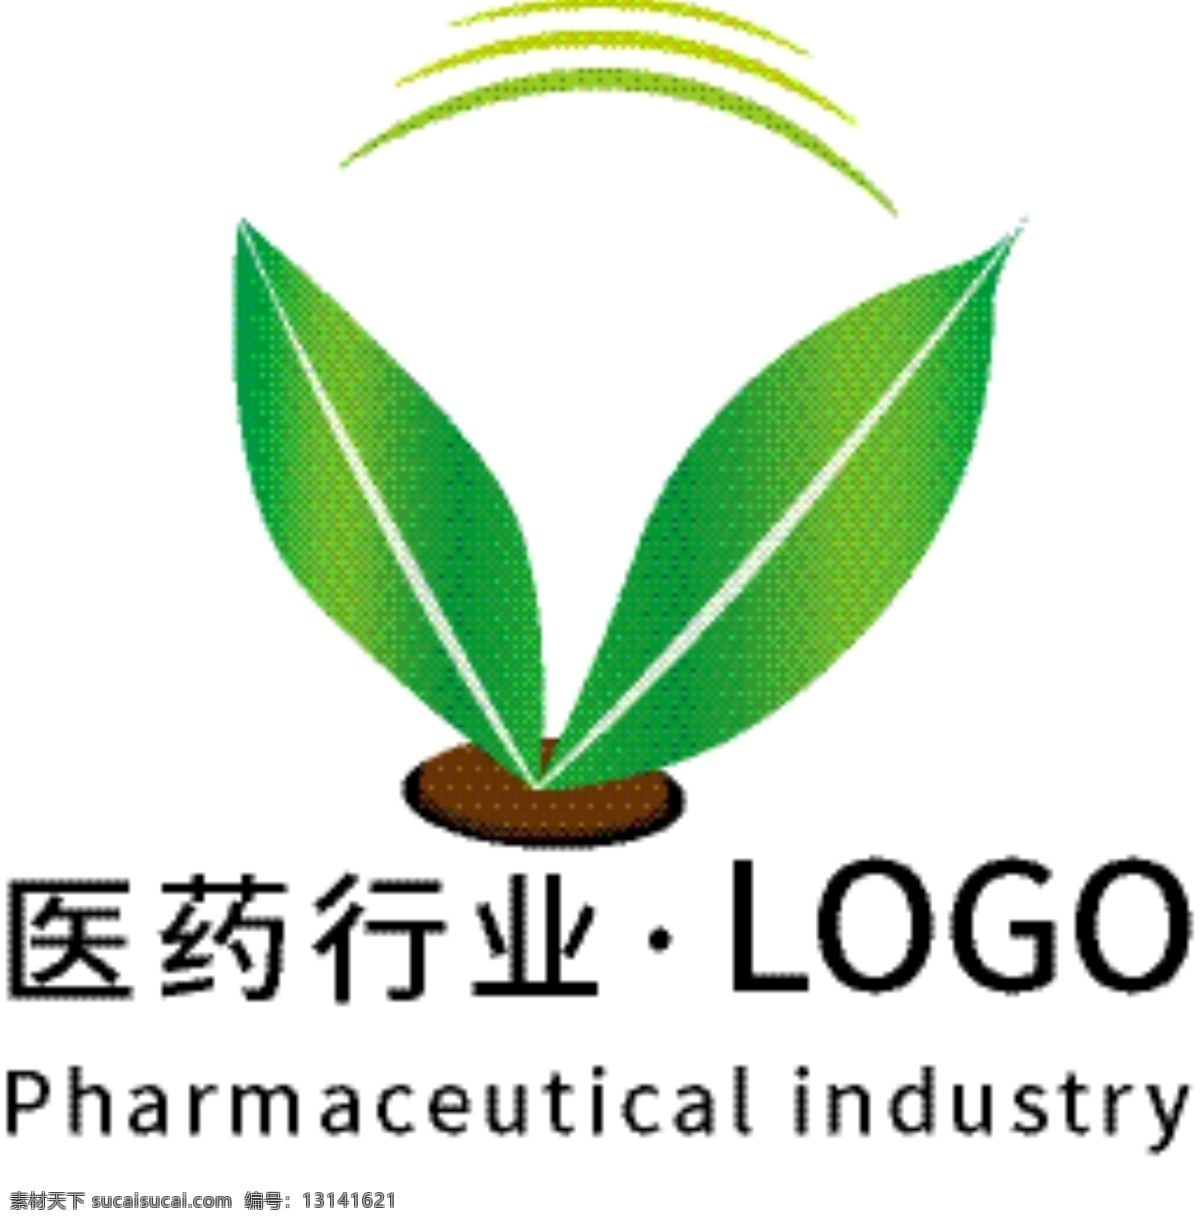 医药行业 logo 通用 模版 健康 绿色 叶子 散发